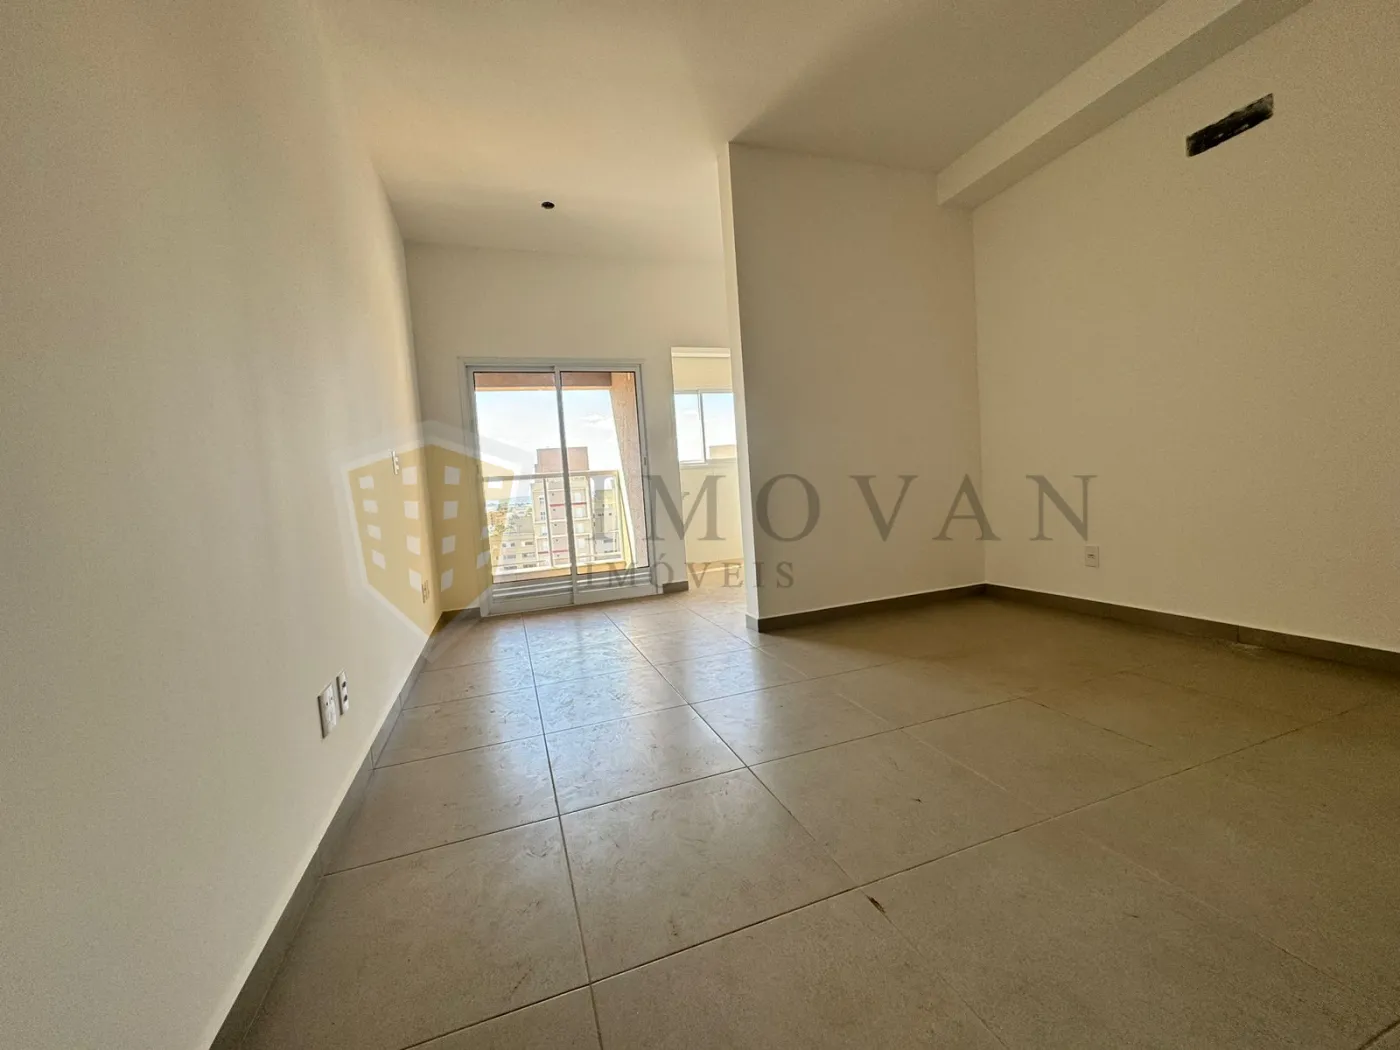 Comprar Apartamento / Kitchnet em Ribeirão Preto R$ 245.000,00 - Foto 2